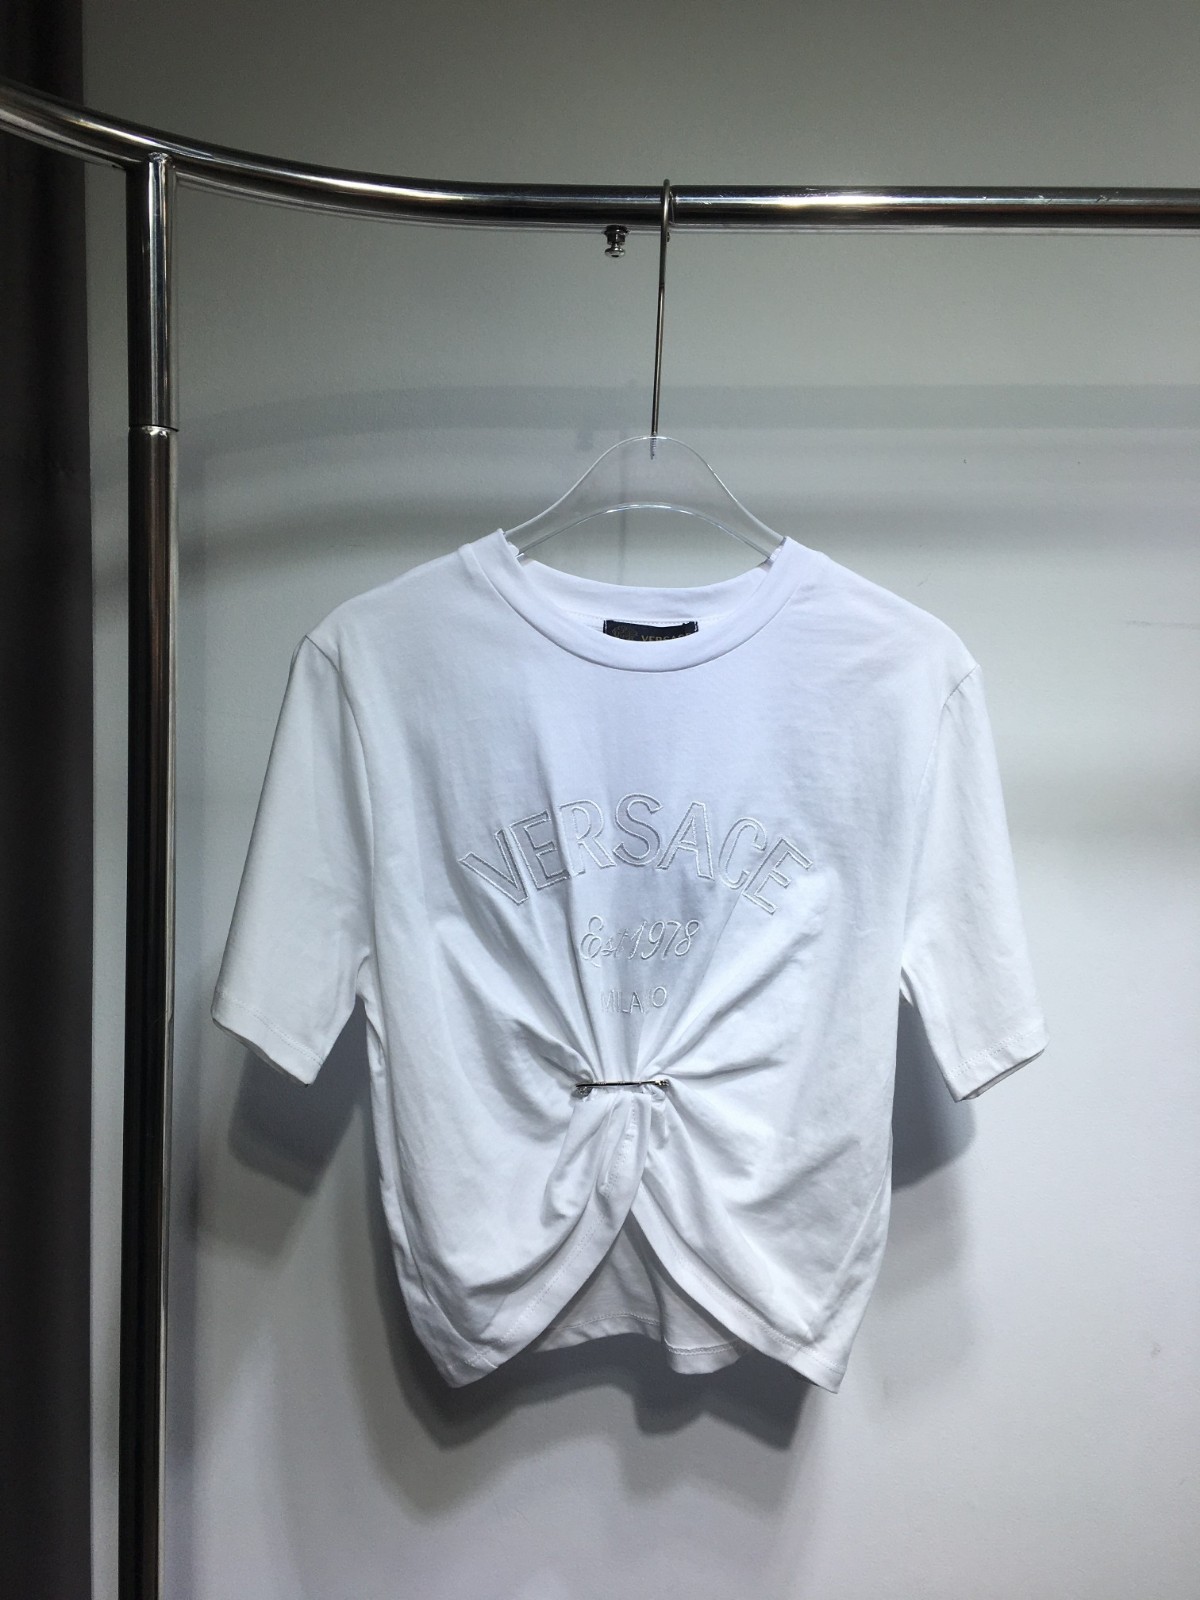 ヴェルサーチェ ミラノ スタンプ クロップ 半袖Tシャツ ヴェルサーチェ Tシャツ コピー ホワイト